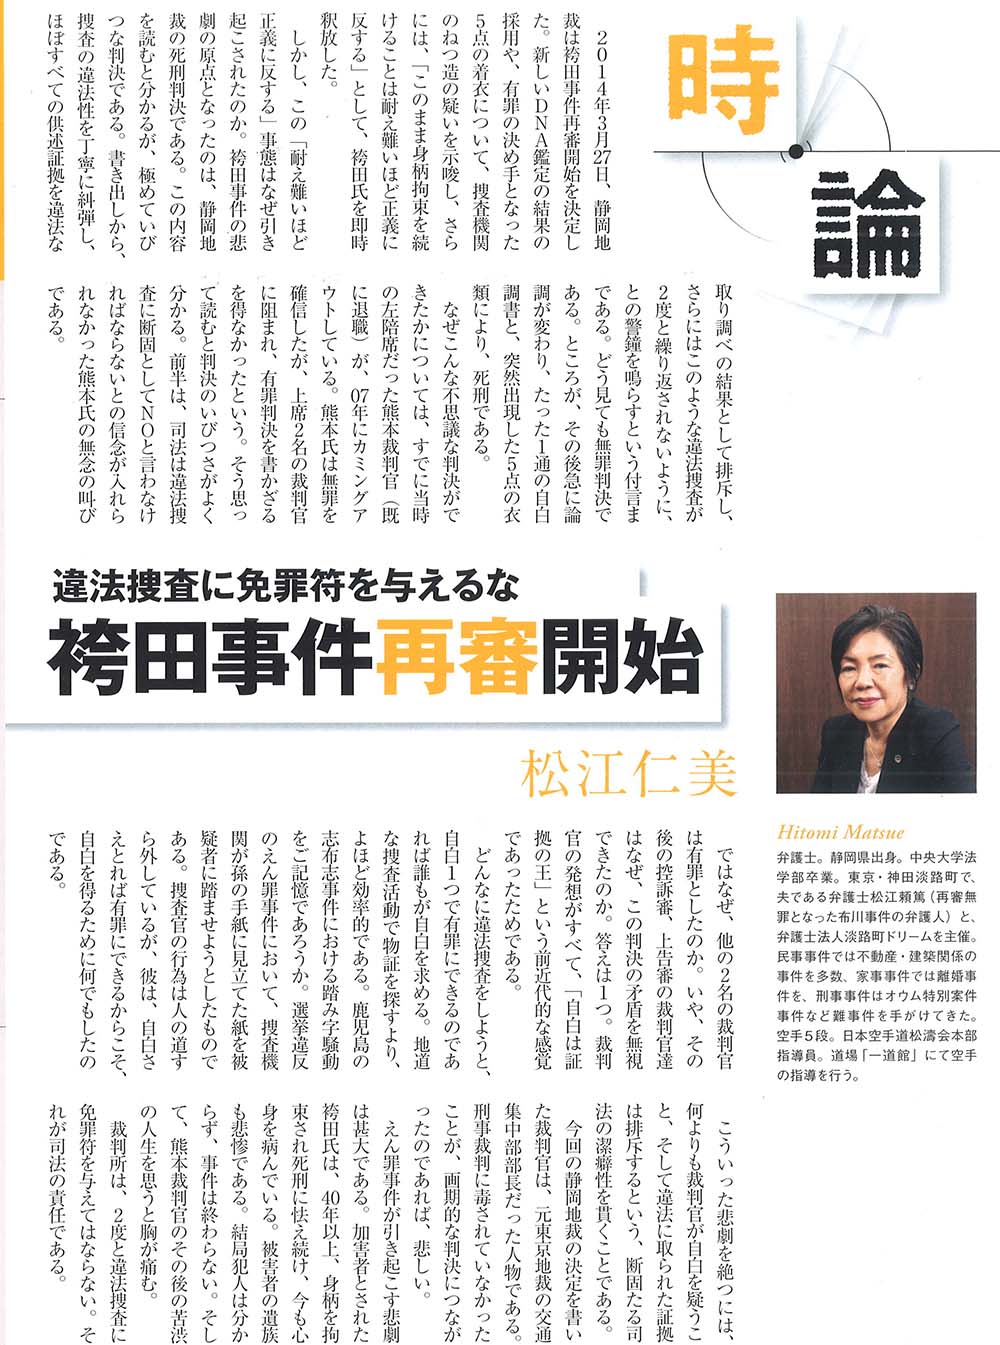 雑誌「先見経済」に、「違法捜査に免罪符を与えるな袴田事件再審開始」をテーマとして、代表弁護士松江仁美が記事を掲載しました。


